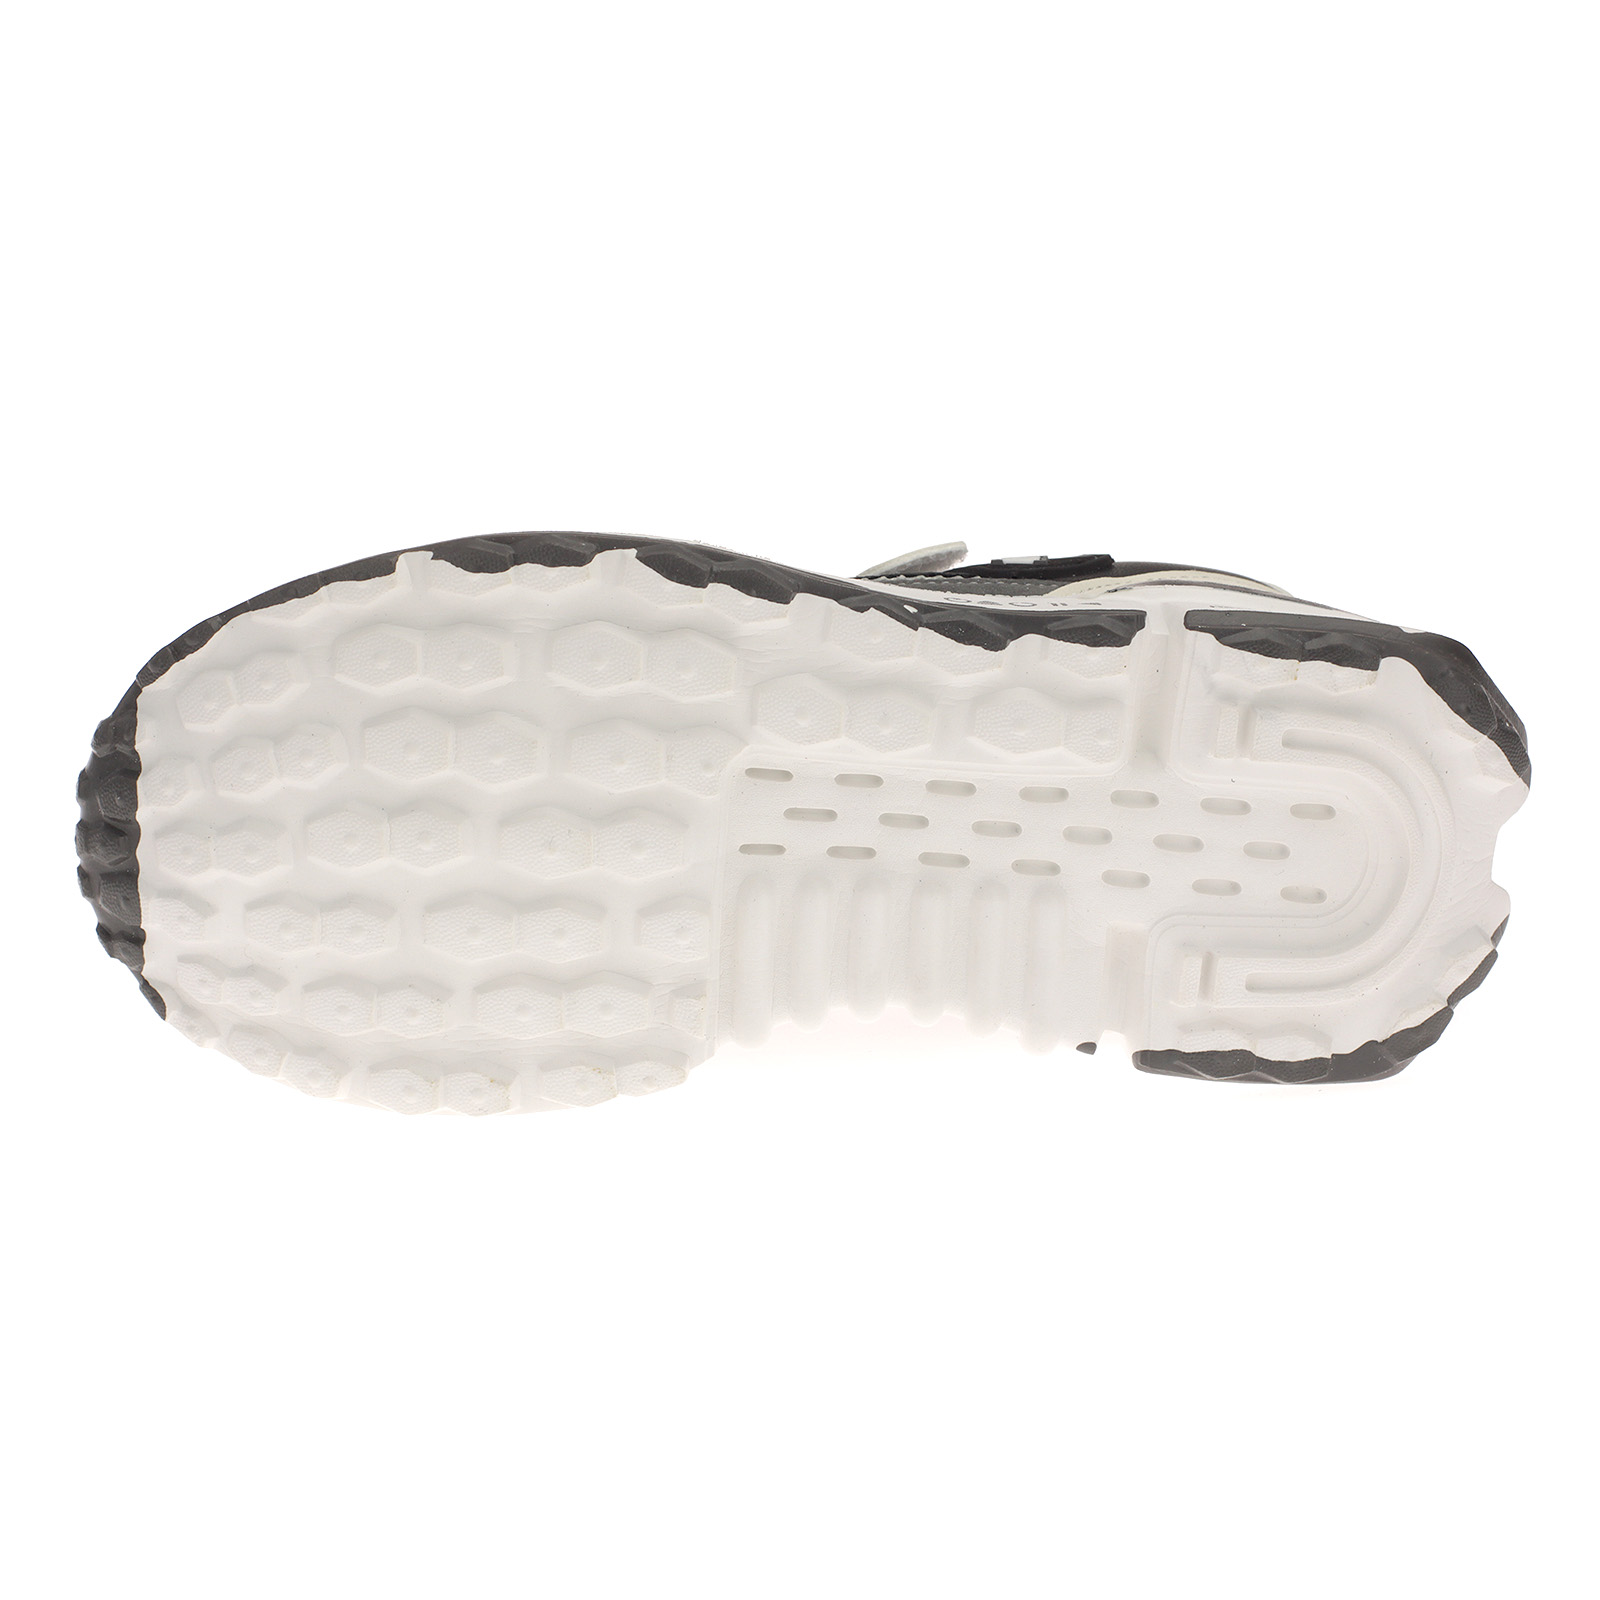 Kinderschuhe Sneaker mit Klettverschluss 4046 Schwarz Weiß